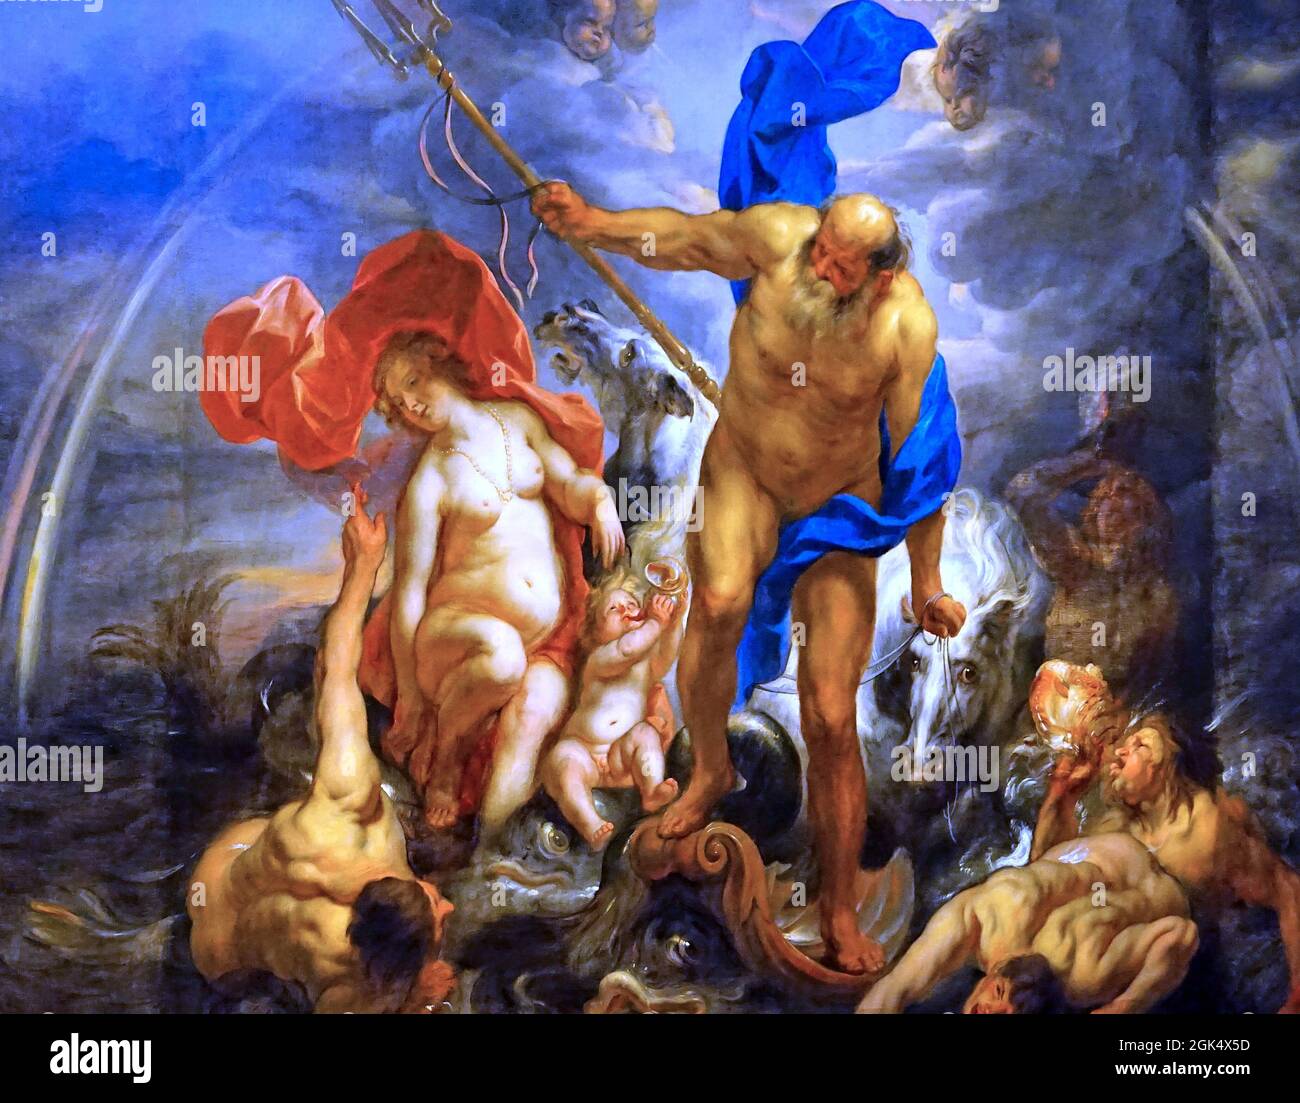 Neptun und Amphitrit im Sturm von Jacob Jordaens (1593-1678) Neptun, der gott des Meeres.seine Frau Amphitrit.im Vordergrund Tritonen;mythologische Figuren halb Fisch, halb Mensch. Stockfoto